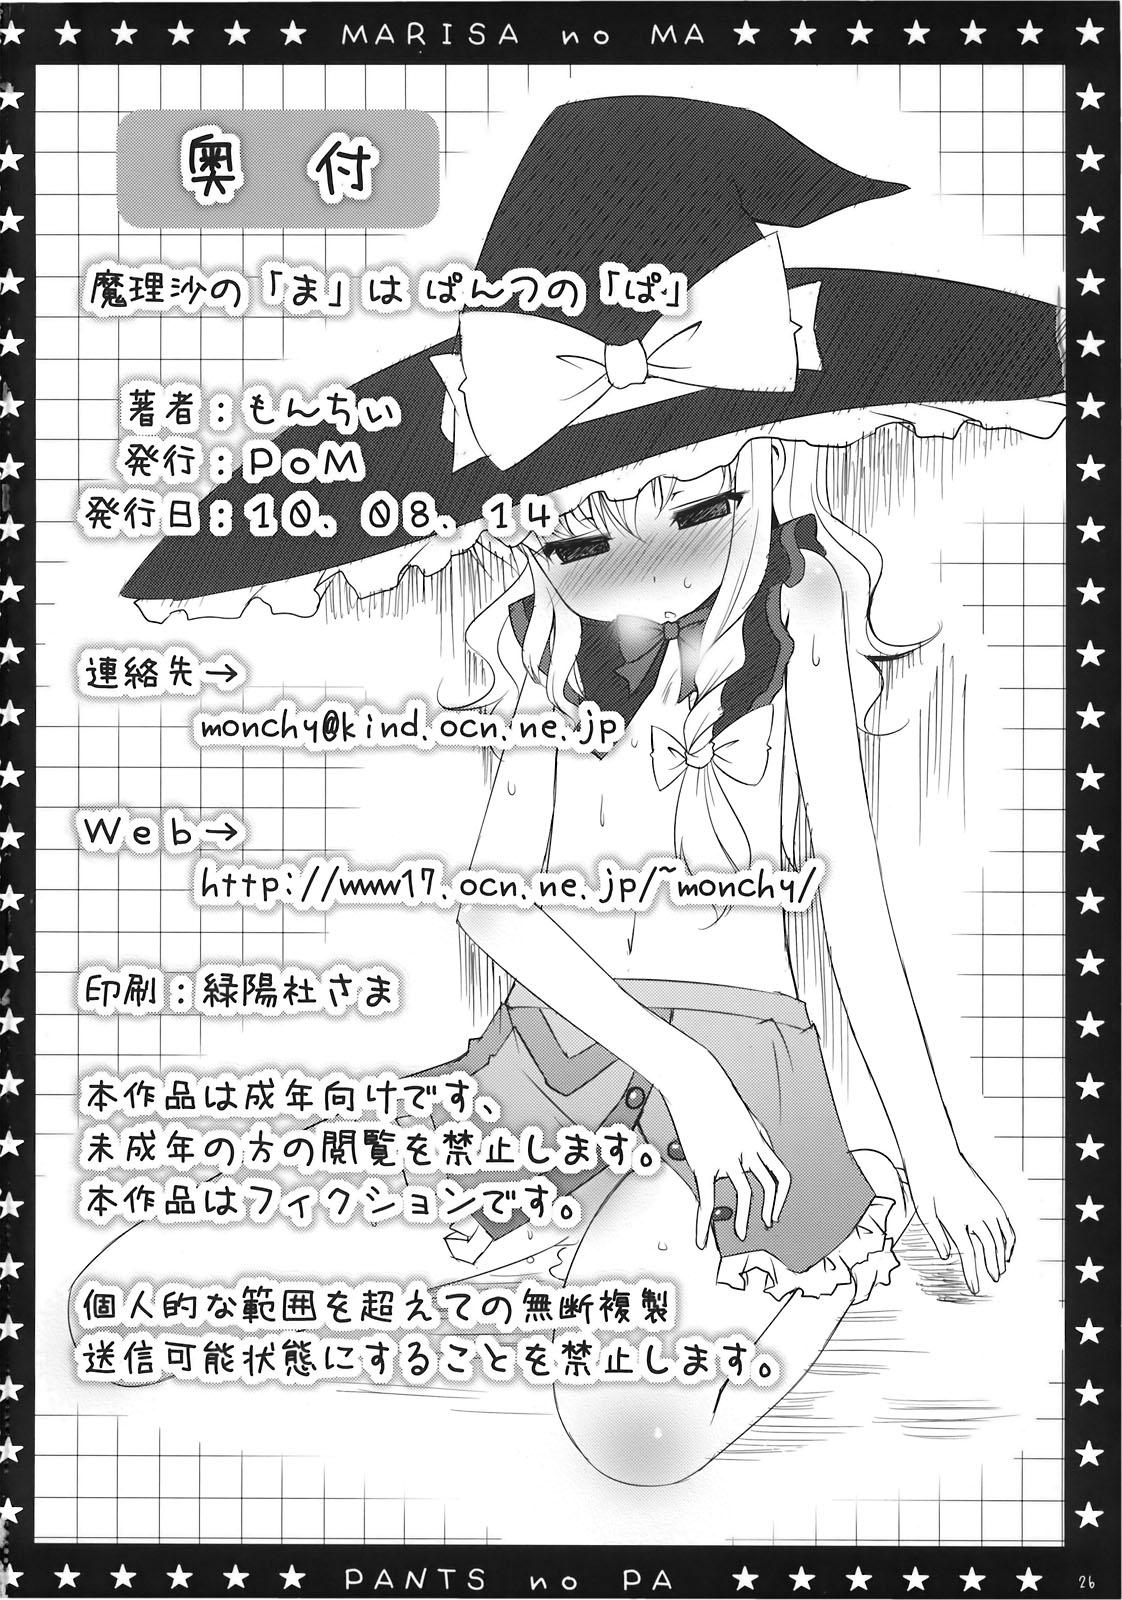 Leggings Marisa no「Ma」wa Pantsu no「Pa」 - Touhou project Roundass - Page 26